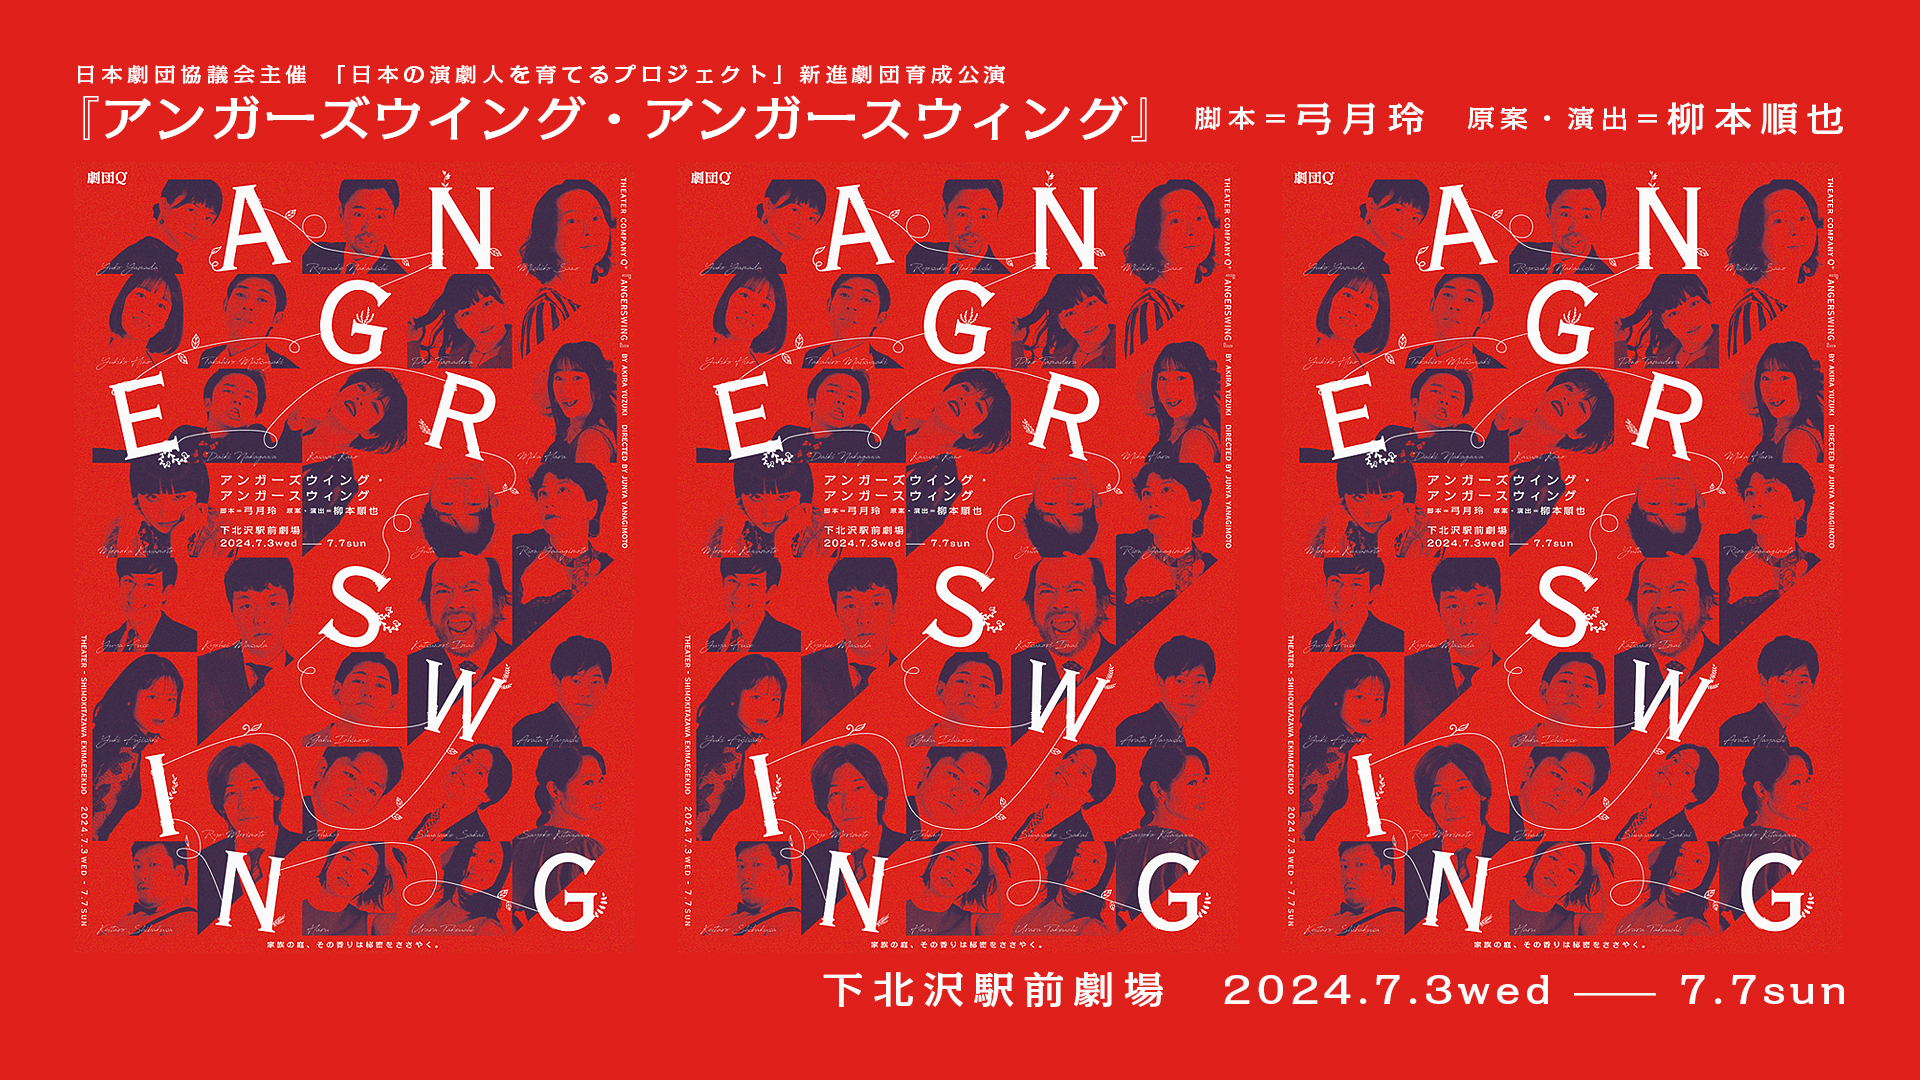 日本劇団協議会主催「日本の演劇人を育てるプロジェクト」新進劇団育成公演
『ANGERSWINGS』